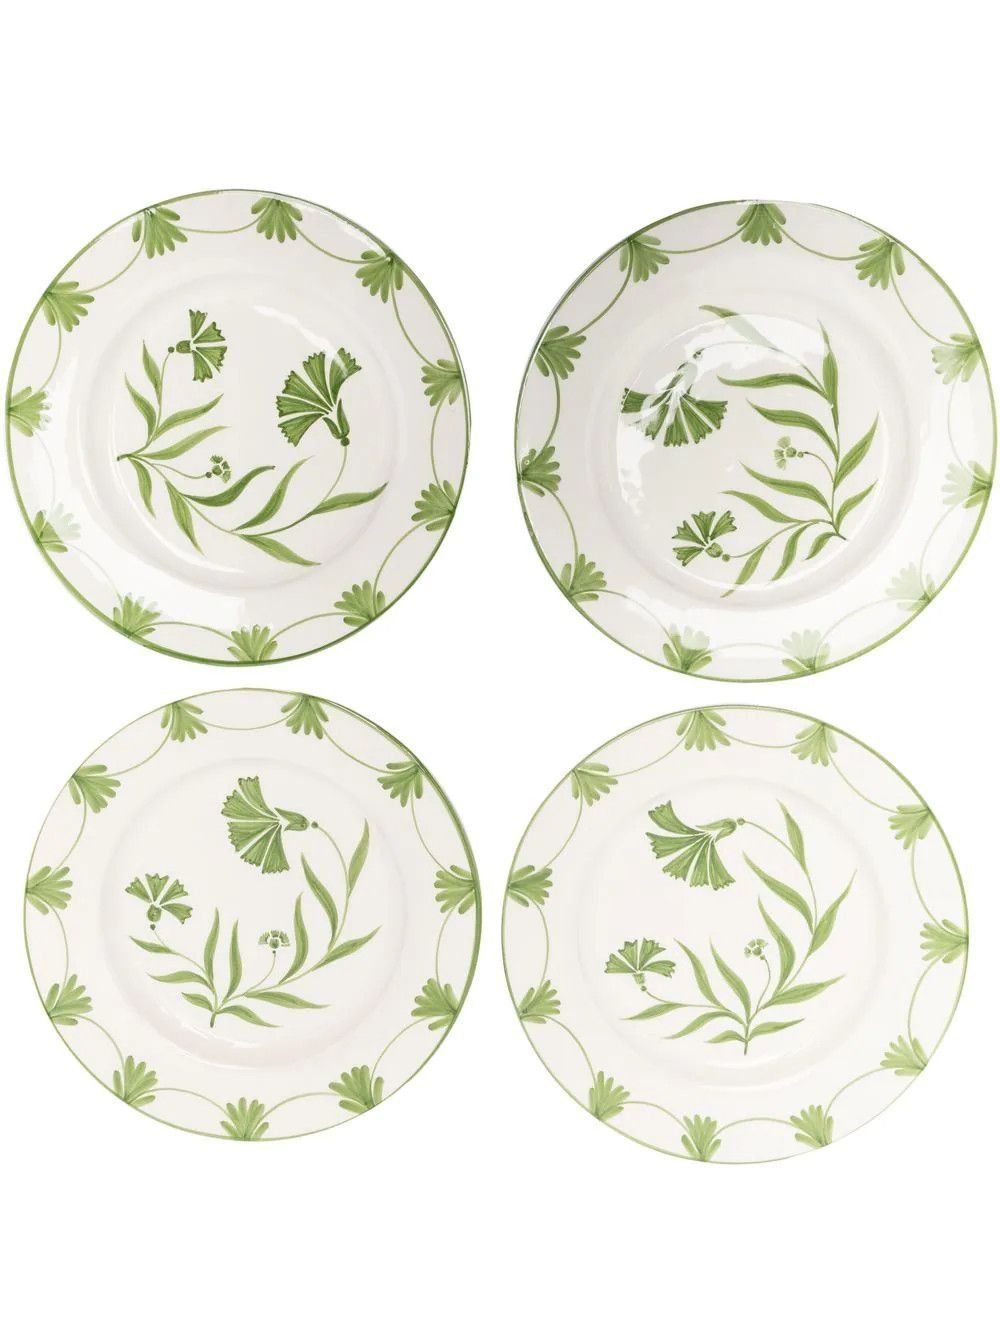 Meadow dinner plate set | Farfetch Global